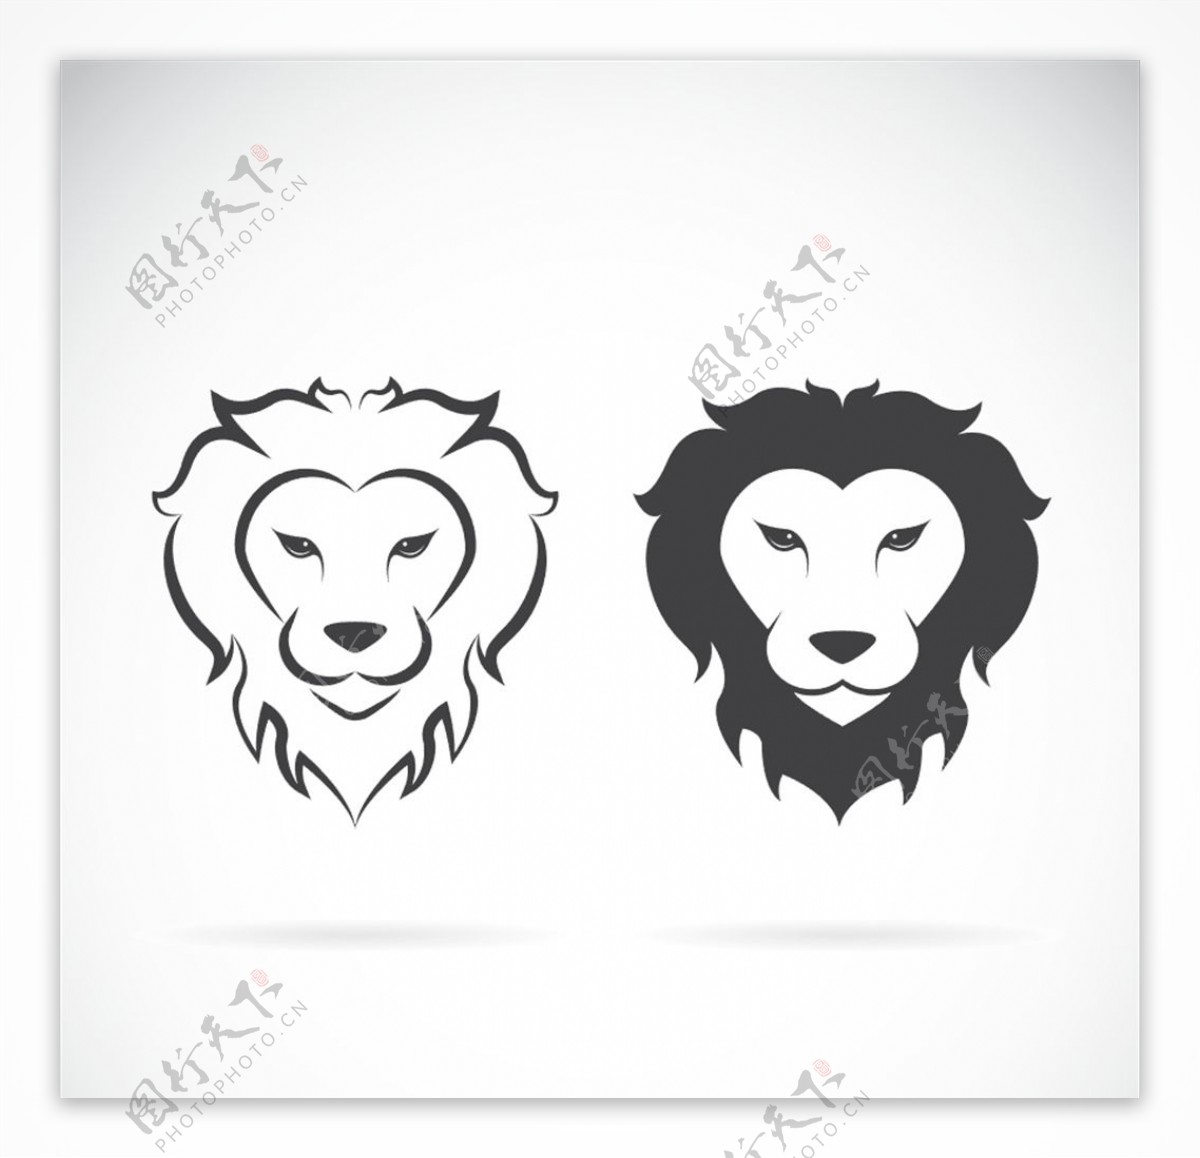 两款黑白线条狮子头像矢量素材